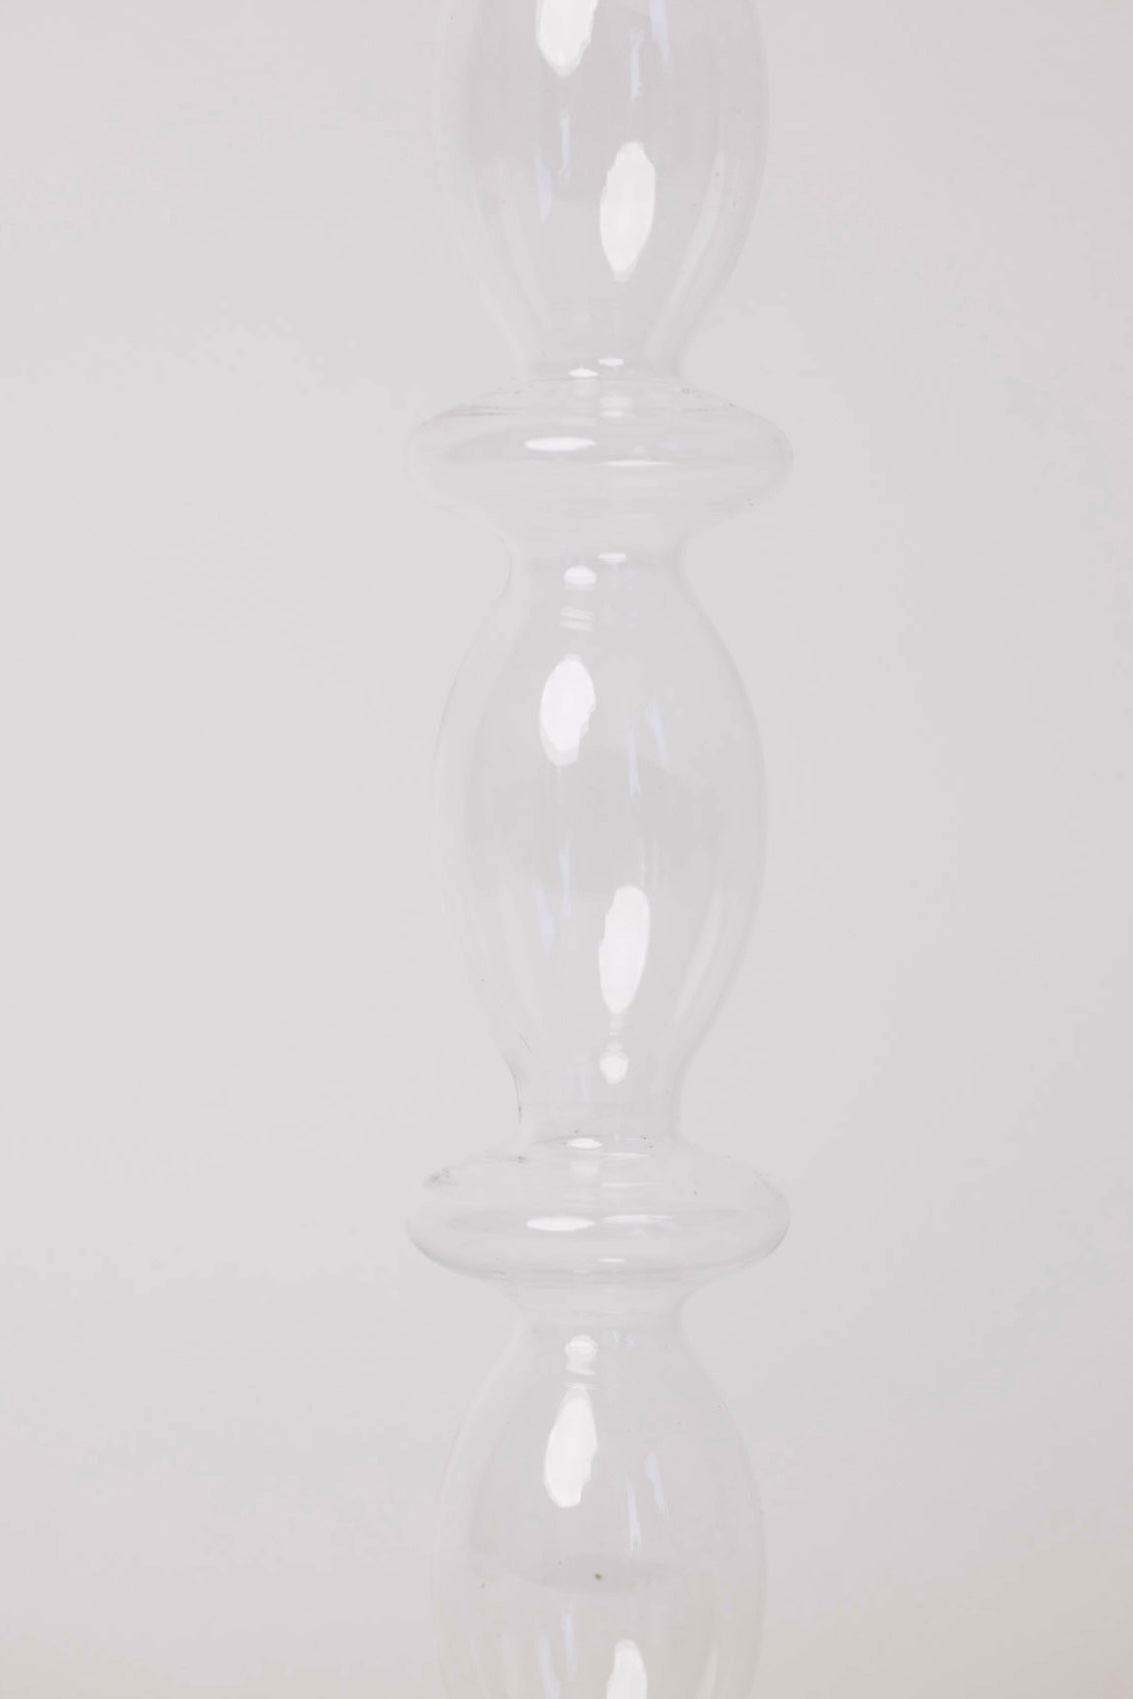 Estelle Glass Taper Holder - 10.5"